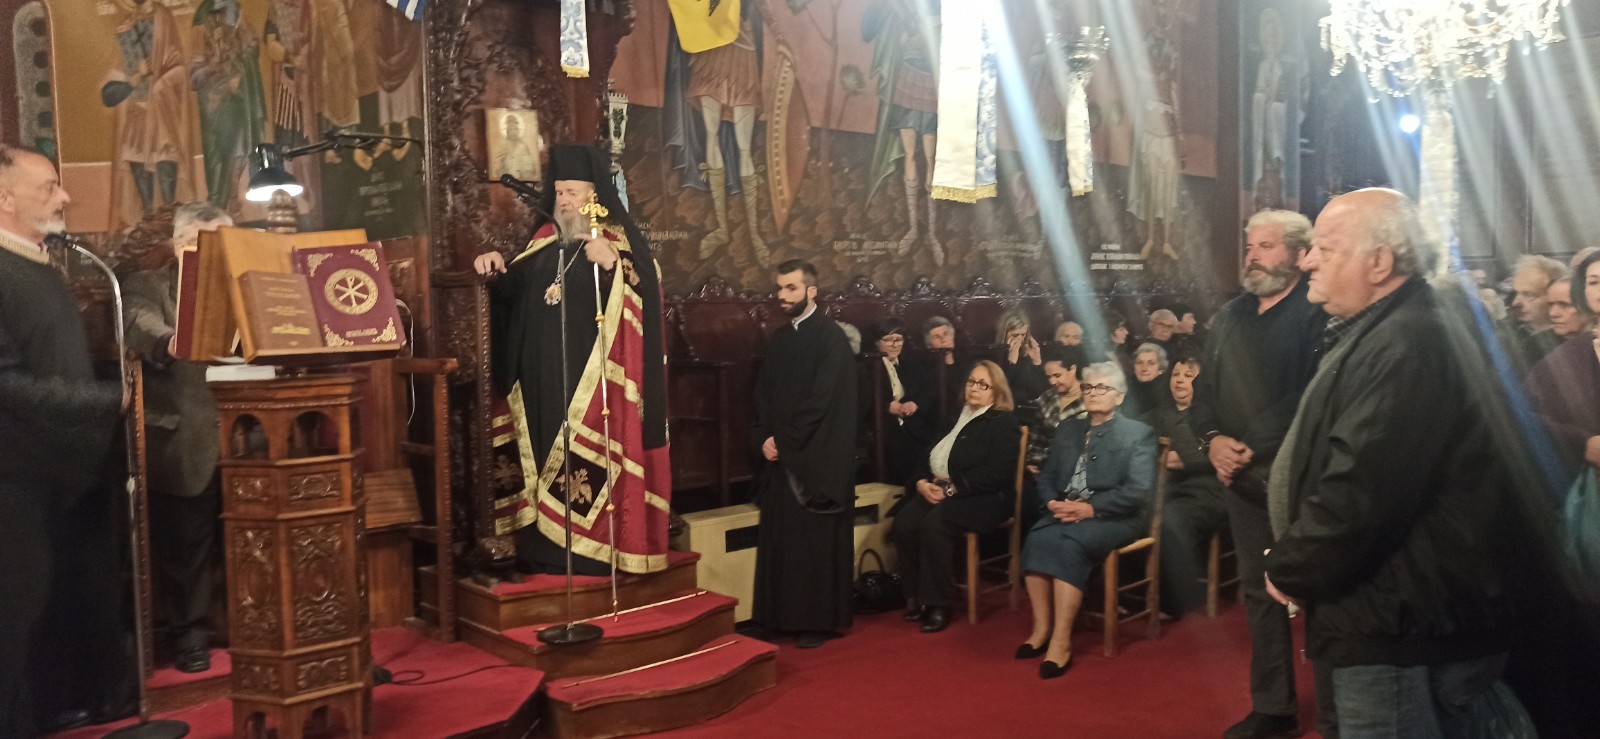 Κληρος,Αρχές,πιστοί στην Αρχιερατική ακολουθία στον εορτάζοντα Ιστορικό Ναό στο Φρε Χανίων